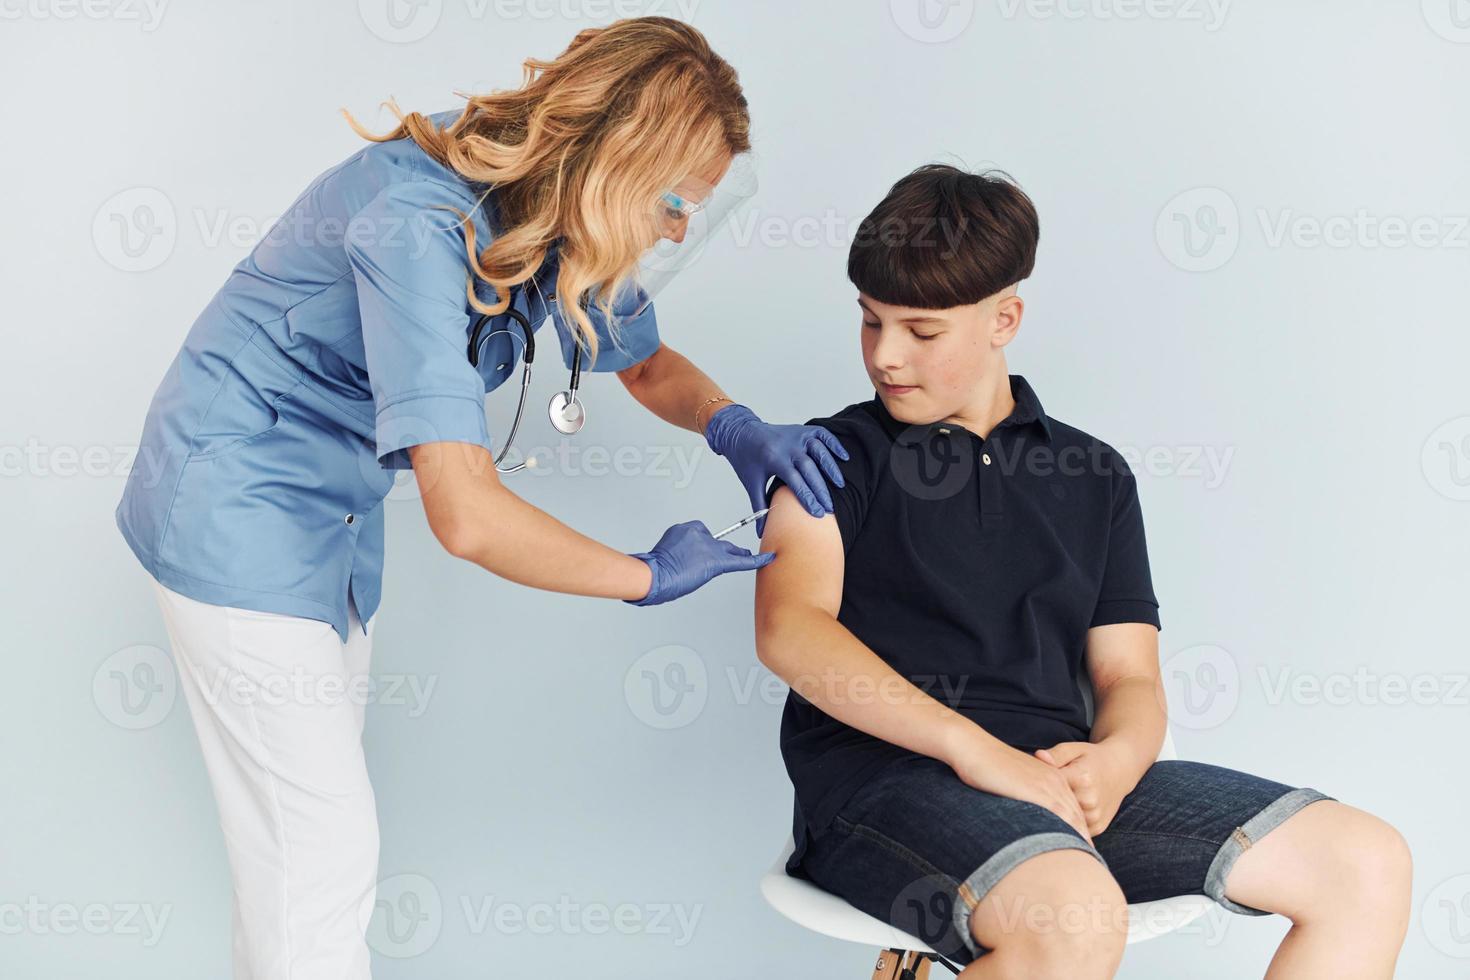 medico nel uniforme fabbricazione vaccinazione per il ragazzo nel nero camicia foto